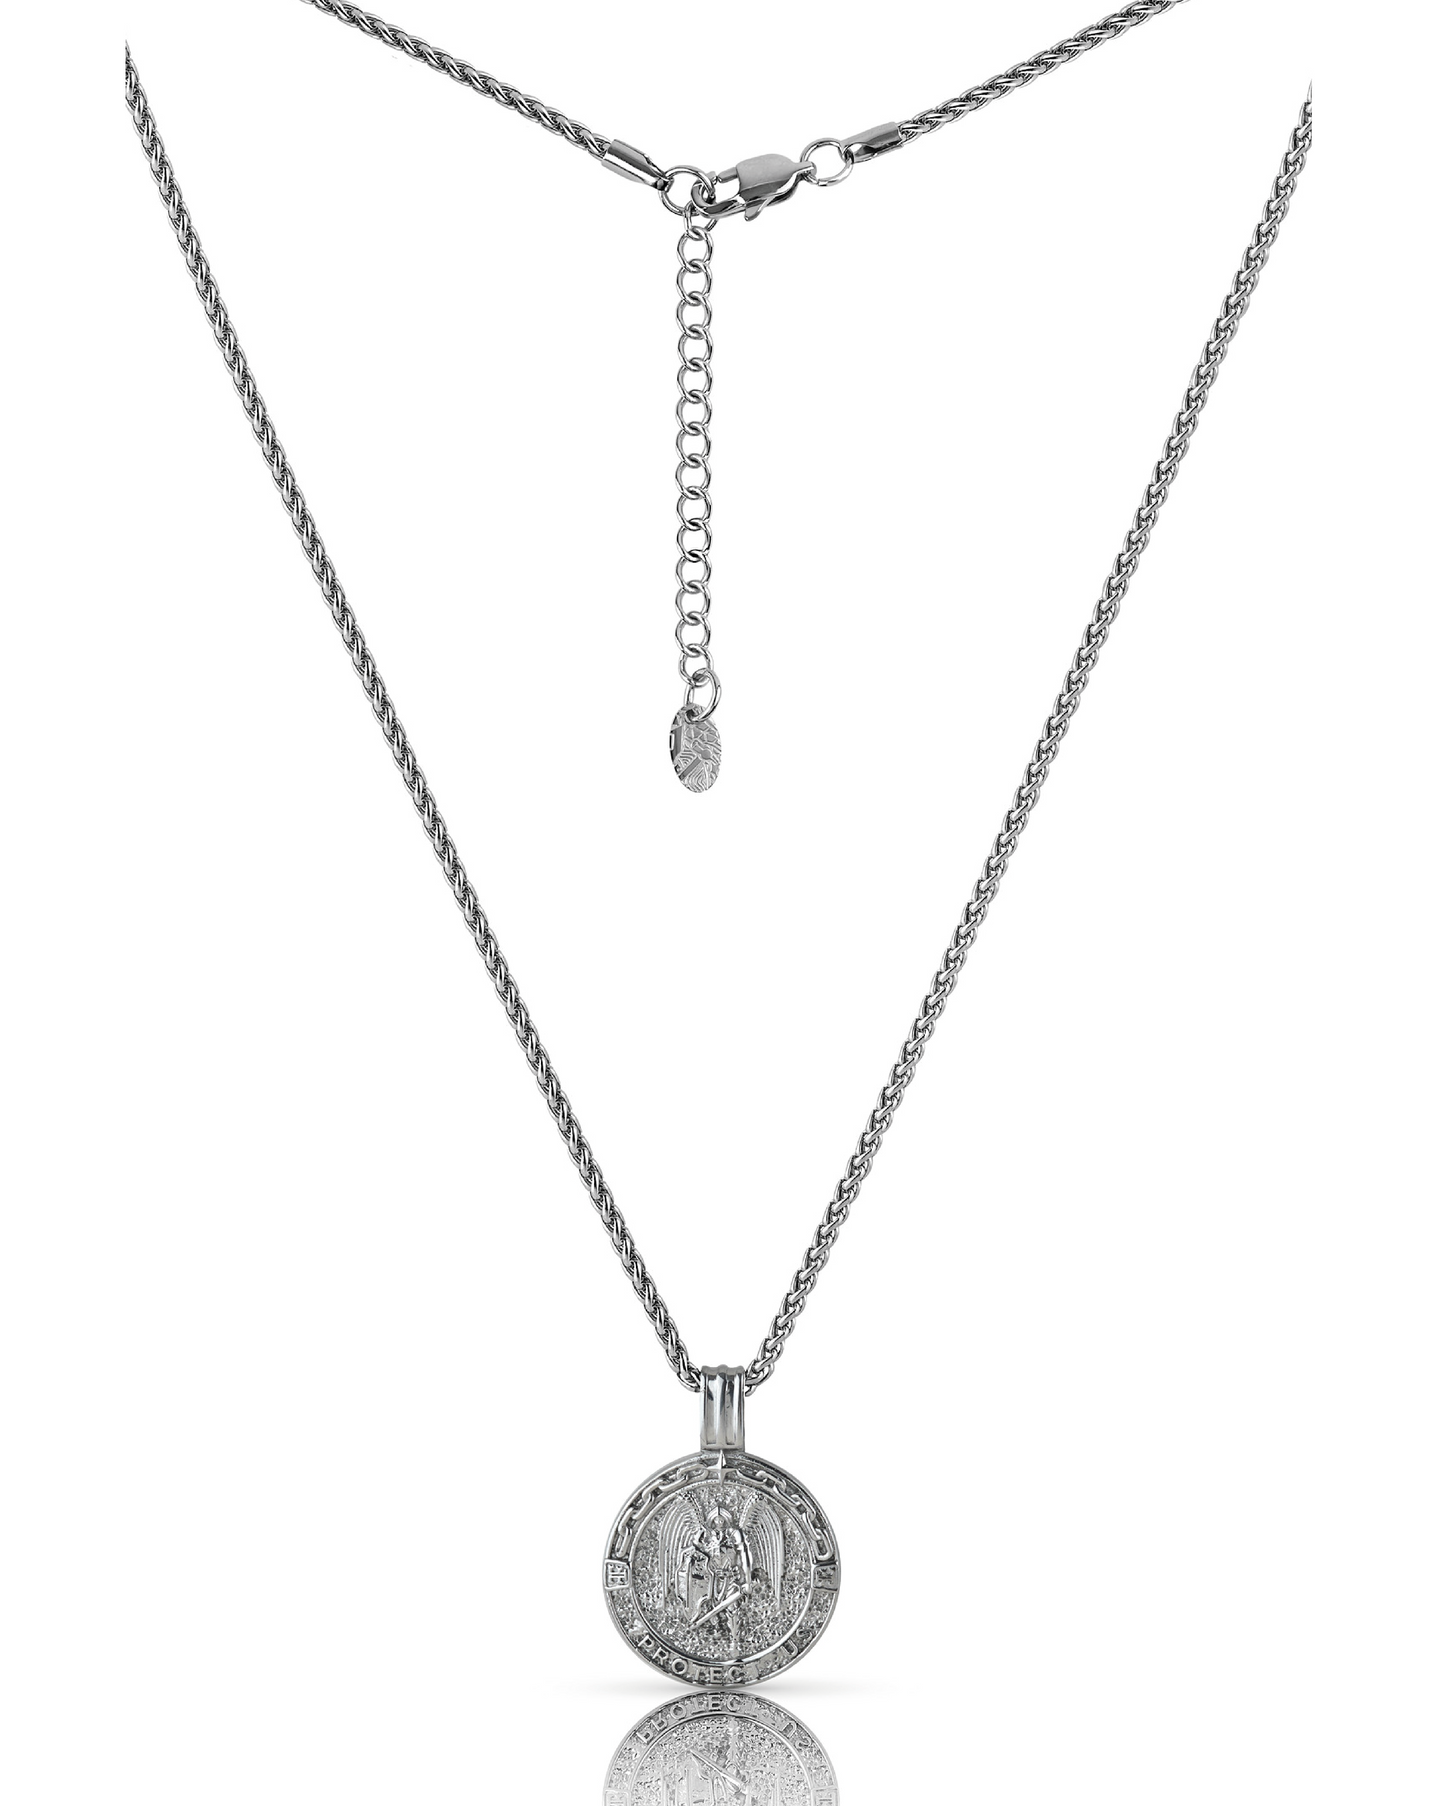 Saint Michael Pendant "Guardian" Silver